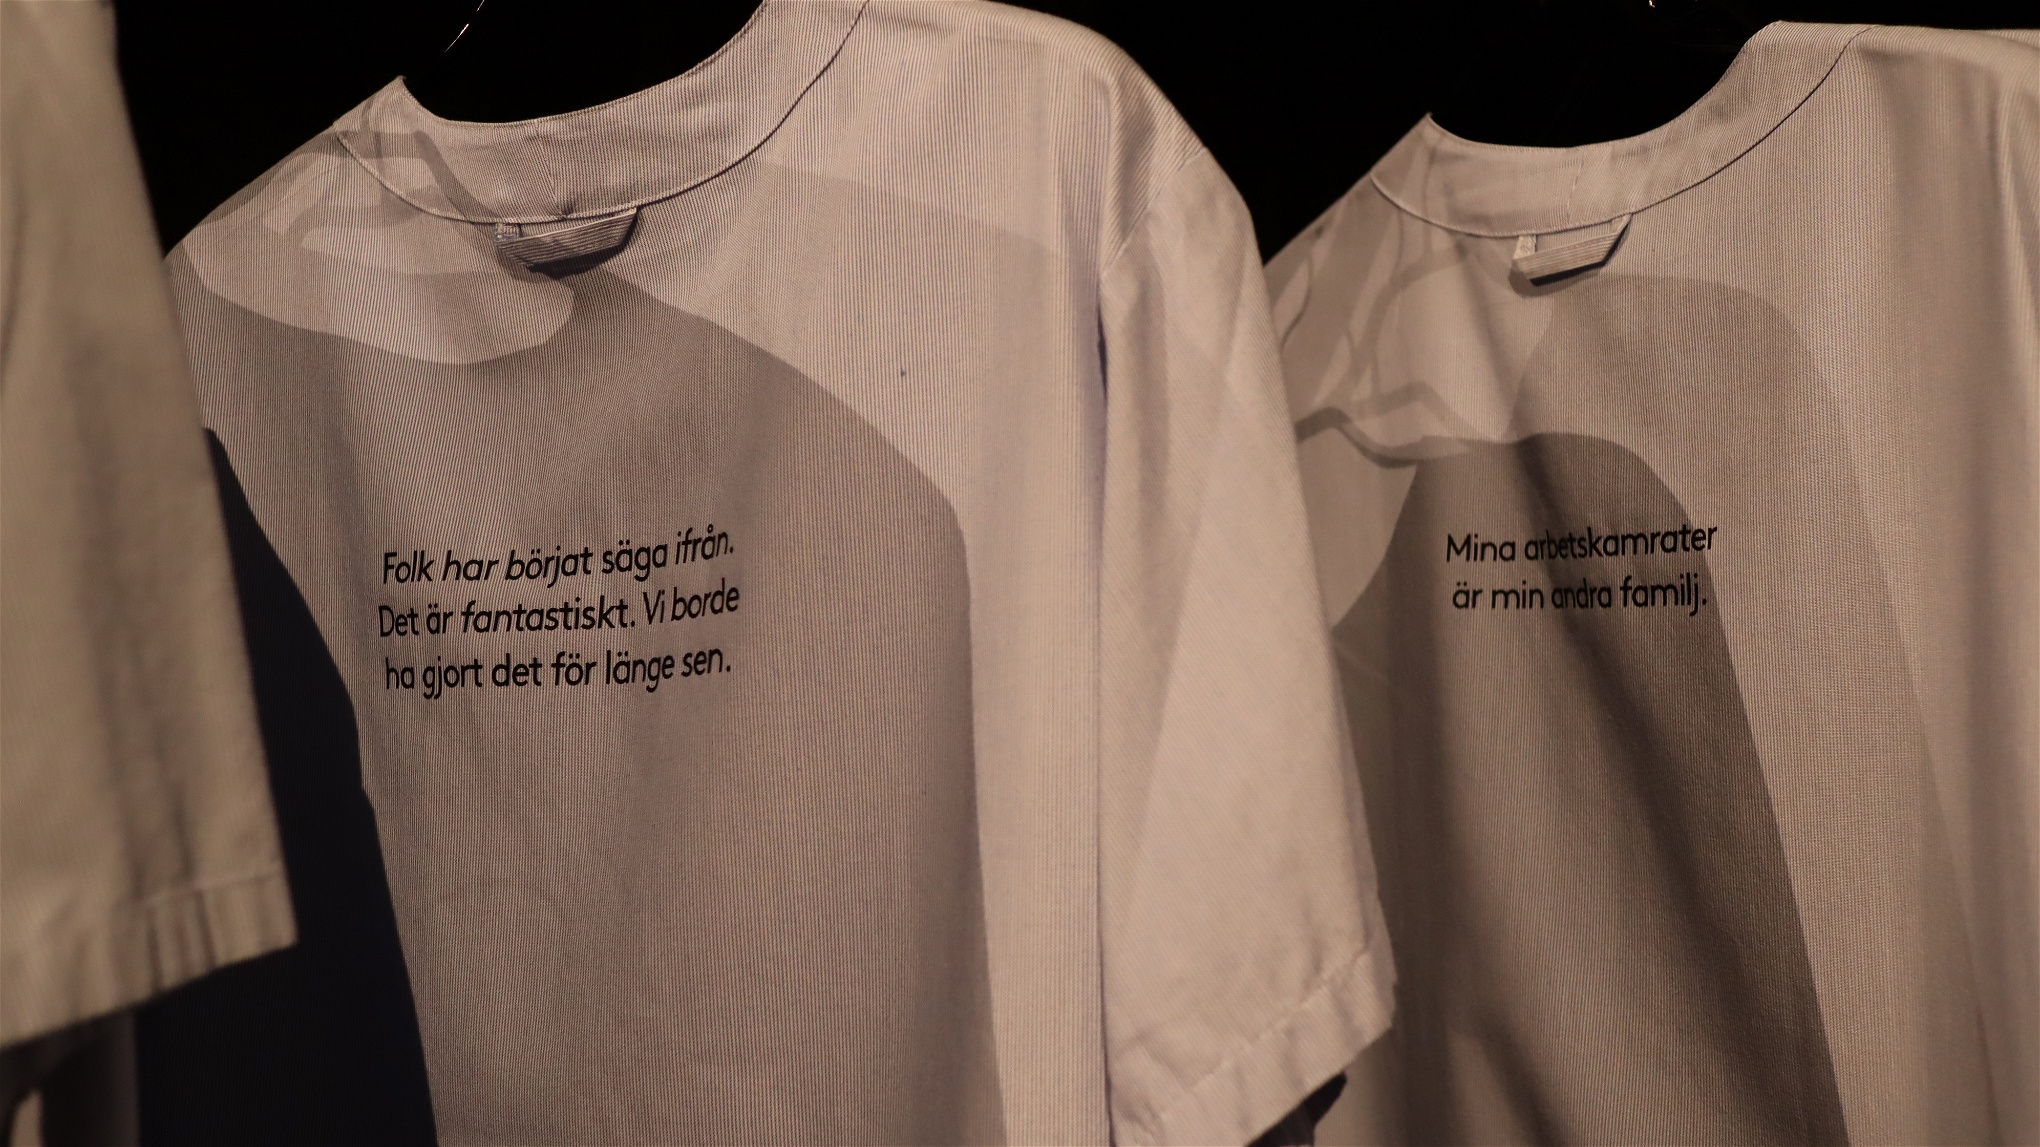 På undersköterskornas strukna skjortor har citat från de intervjuade trycks upp. Foto: Länsmuseet Gävleborg